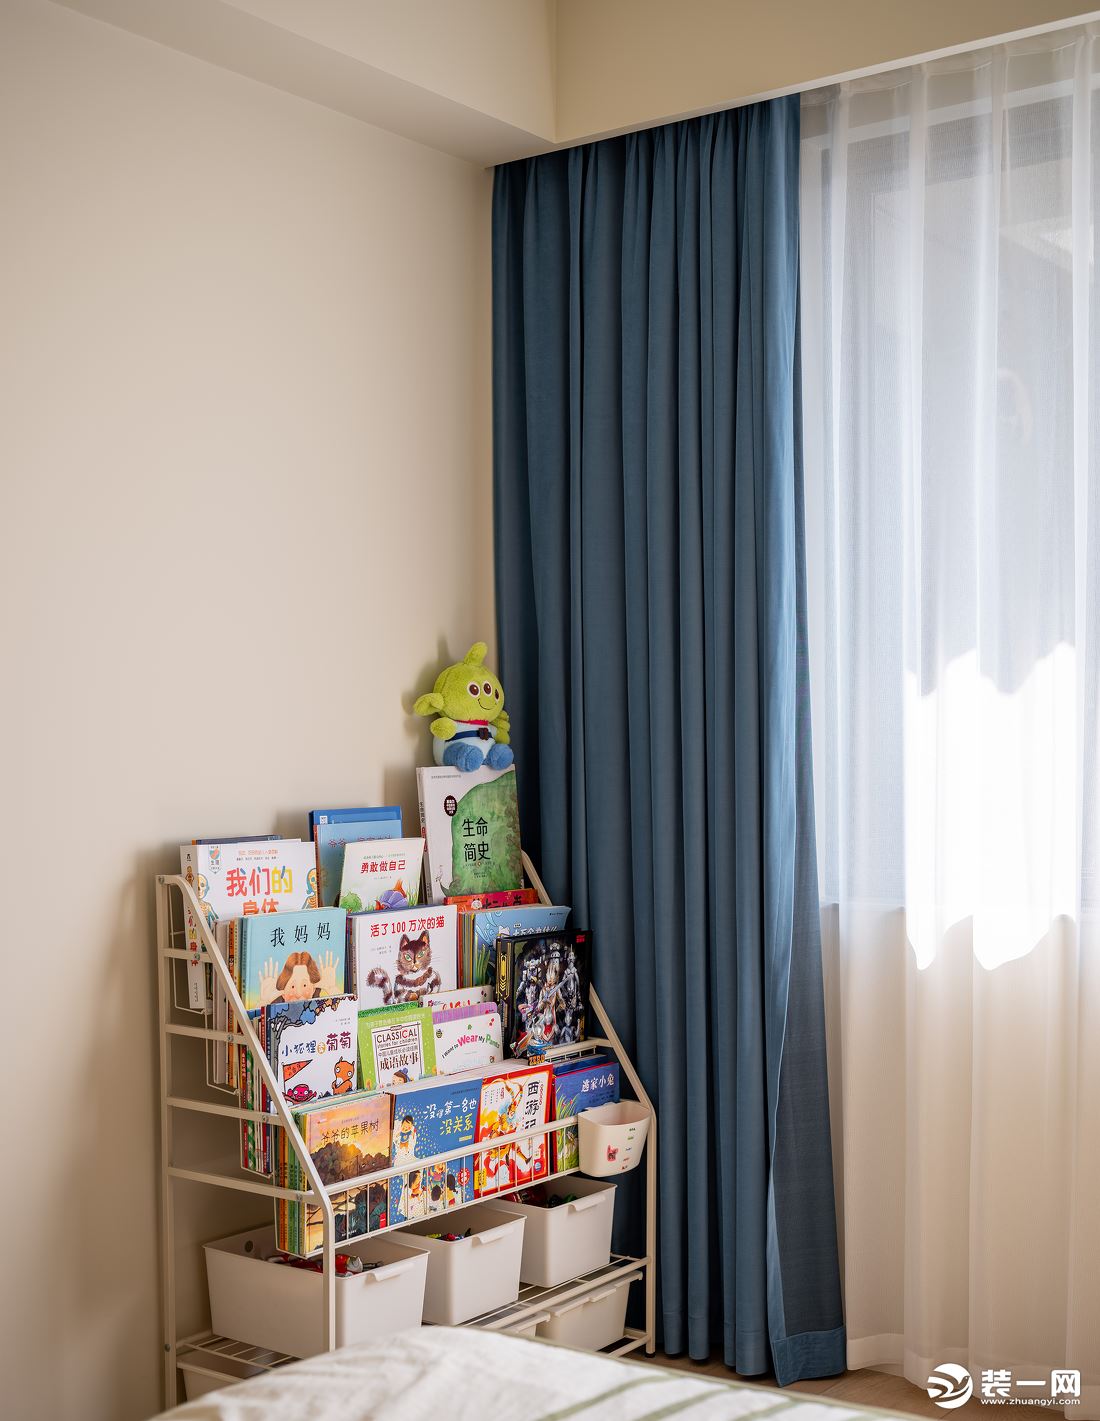 搭配男孩子都喜欢的蓝色作窗帘，添加朴拙可爱的童趣。窗边做简单的阅读、学习区，方便以后跟随孩子的成长做